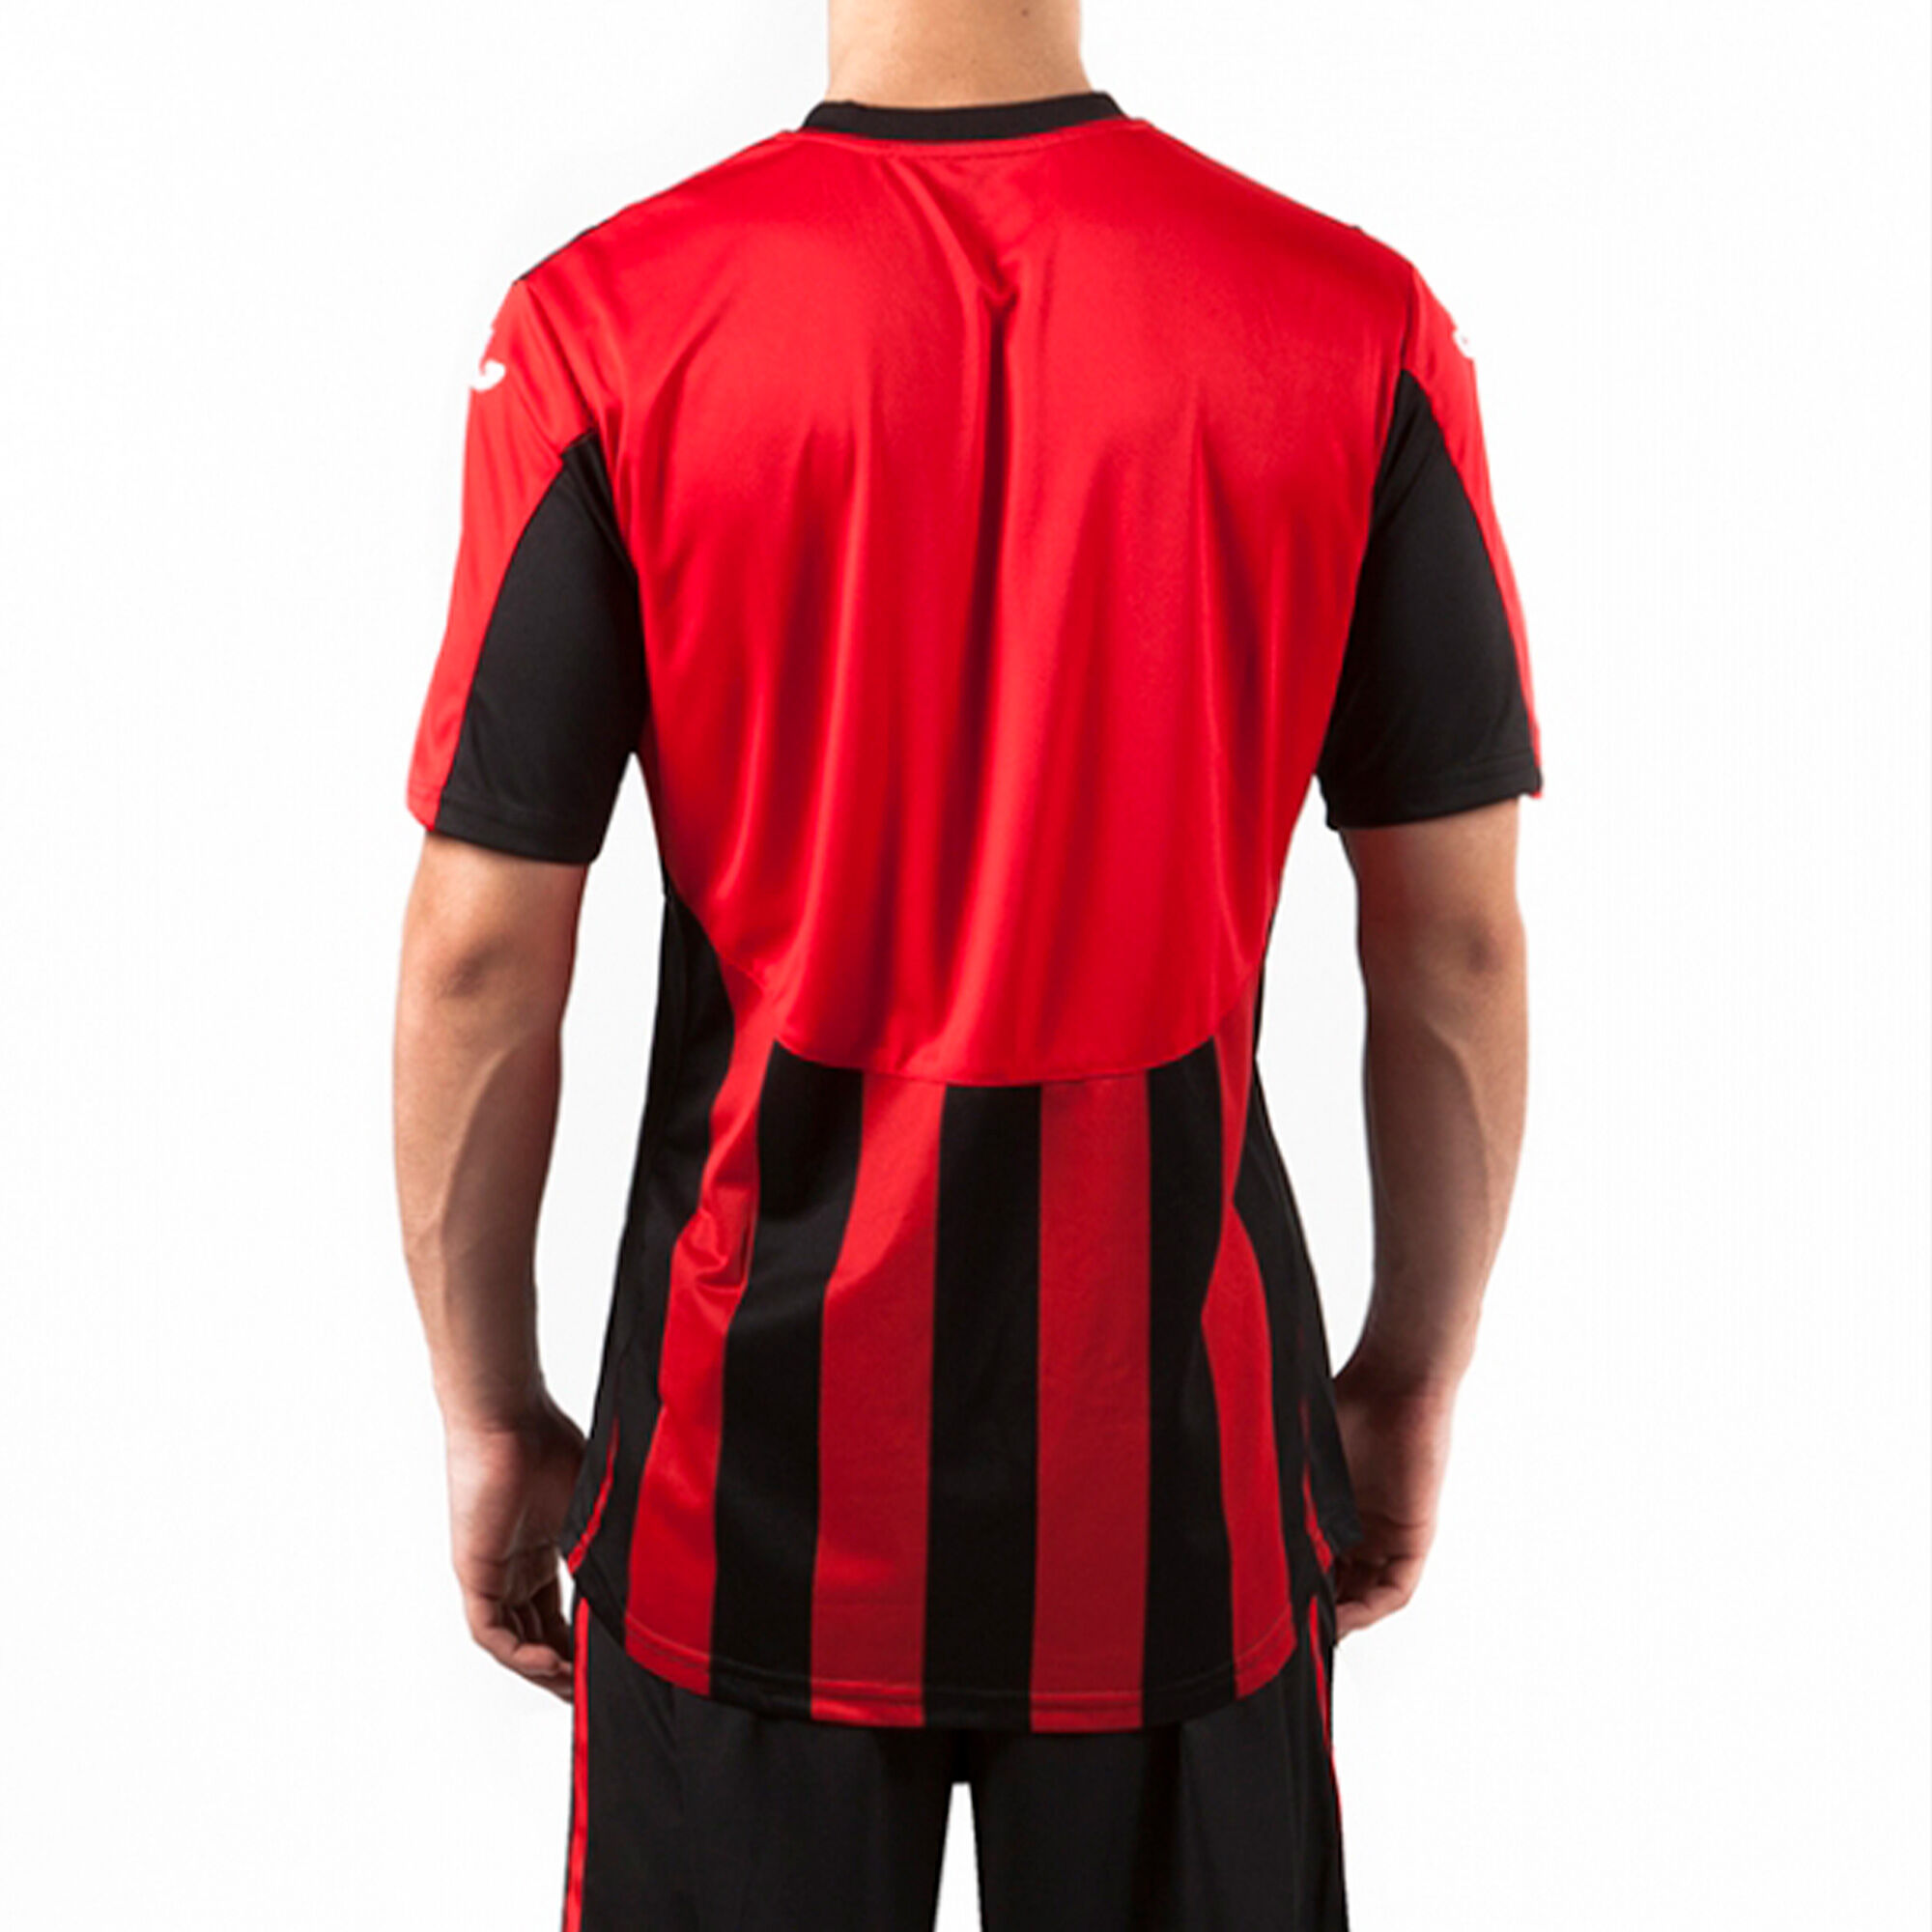 Camisetas - Fútbol - Rojo - Hombre